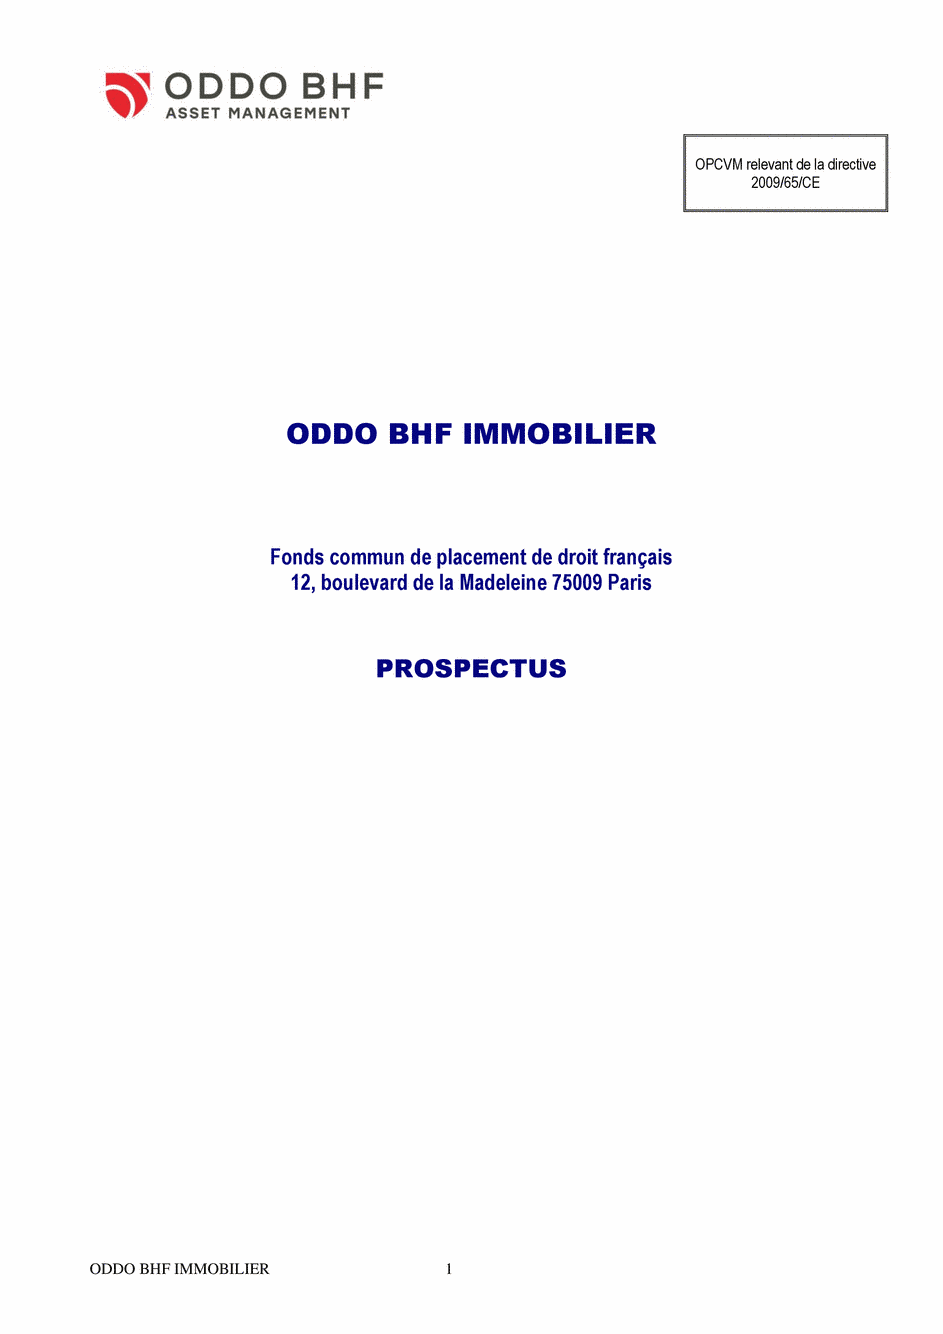 Prospectus ODDO BHF IMMOBILIER DR-EUR - 31/12/2020 - Français